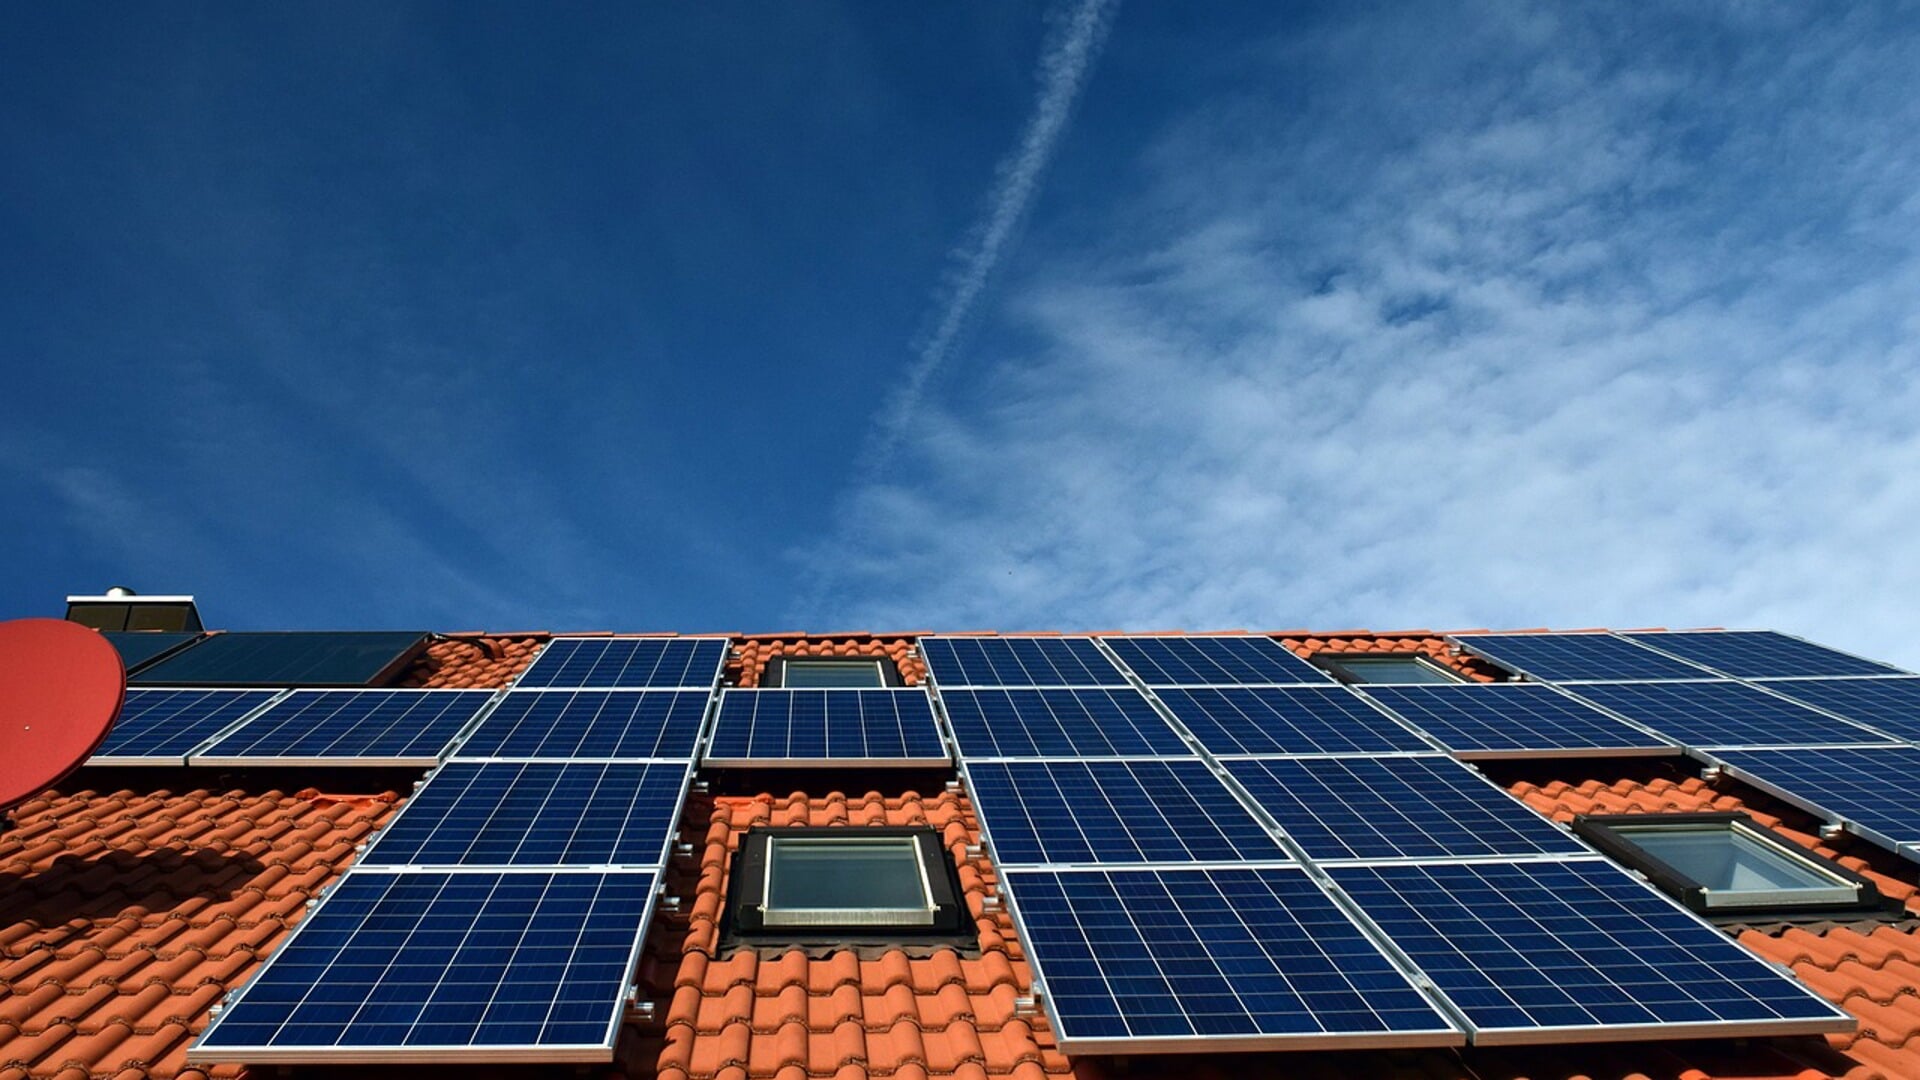 In de provincie Noord-Holland vind je op een kleine 22% van de huizen installaties om zonne-energie op te wekken.